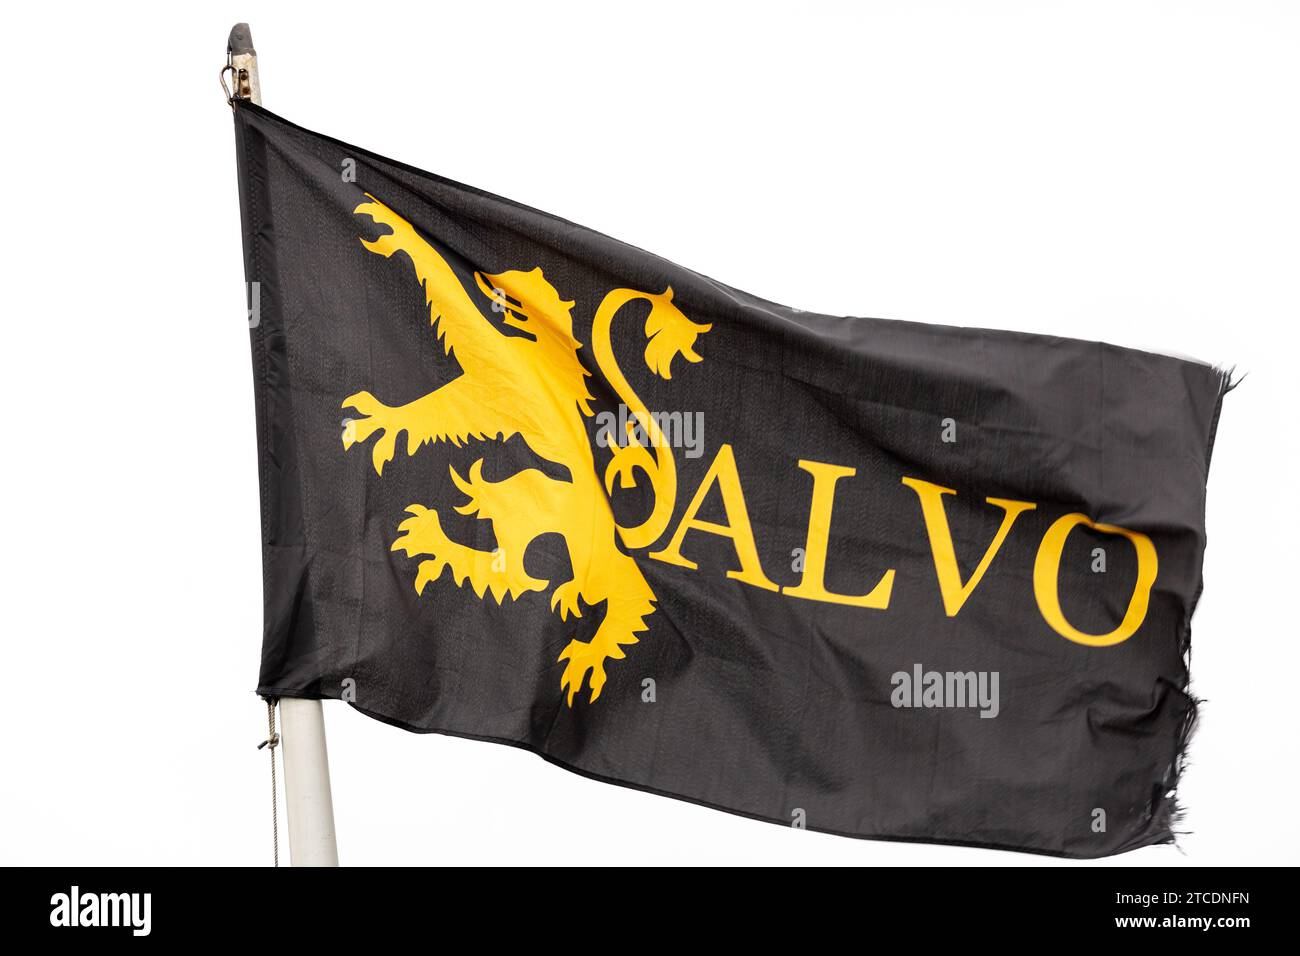 Salvo ist ein Wahlkampfarm von Liberation Scotland, der darauf abzielt, Schottlands Souveränität wiederherzustellen Stockfoto